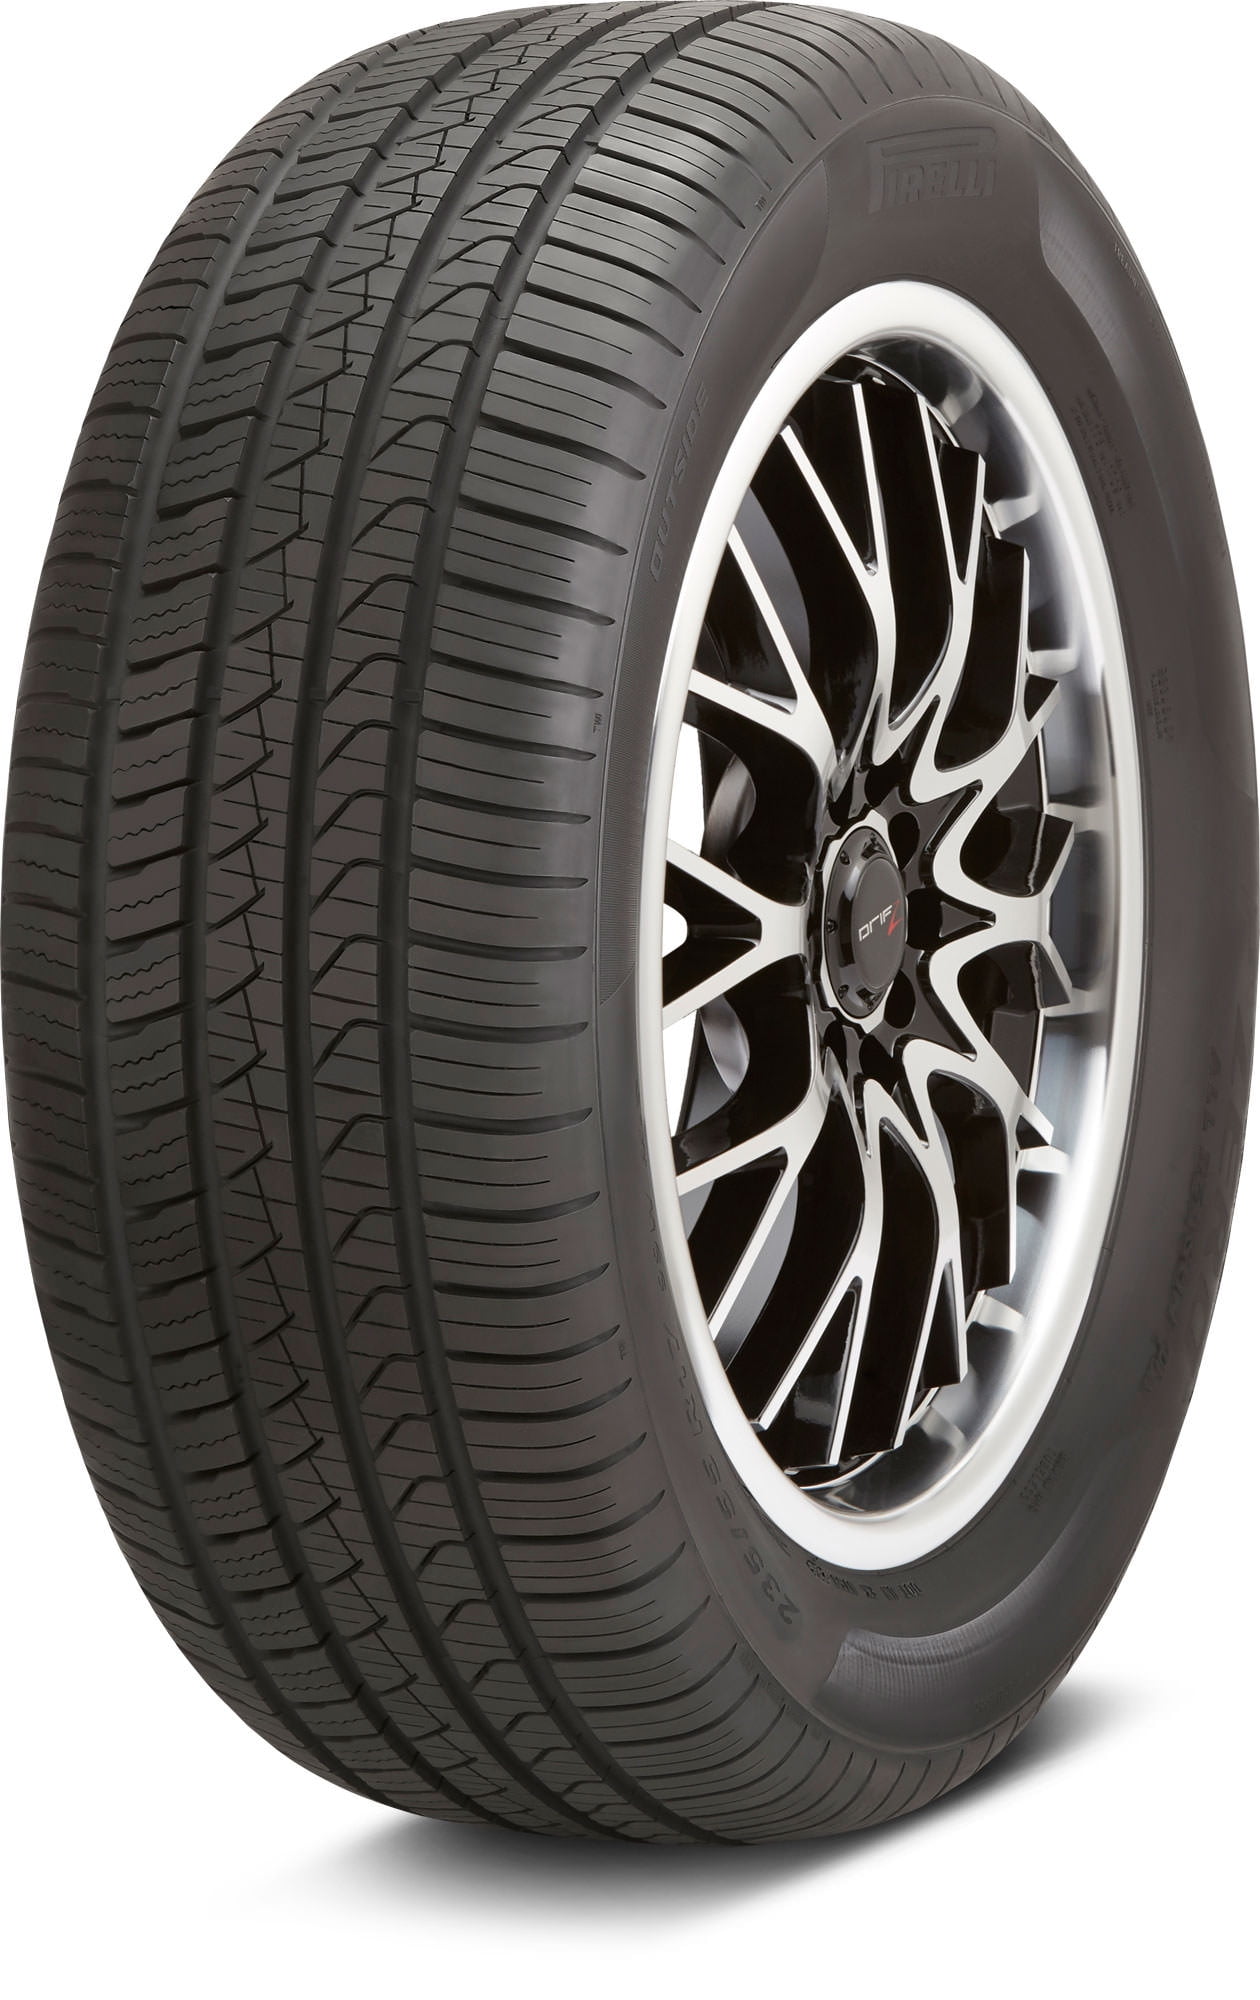 2X Tyres 245 40 R18 97Y XL Pirelli PZero Mo C B 72dB 